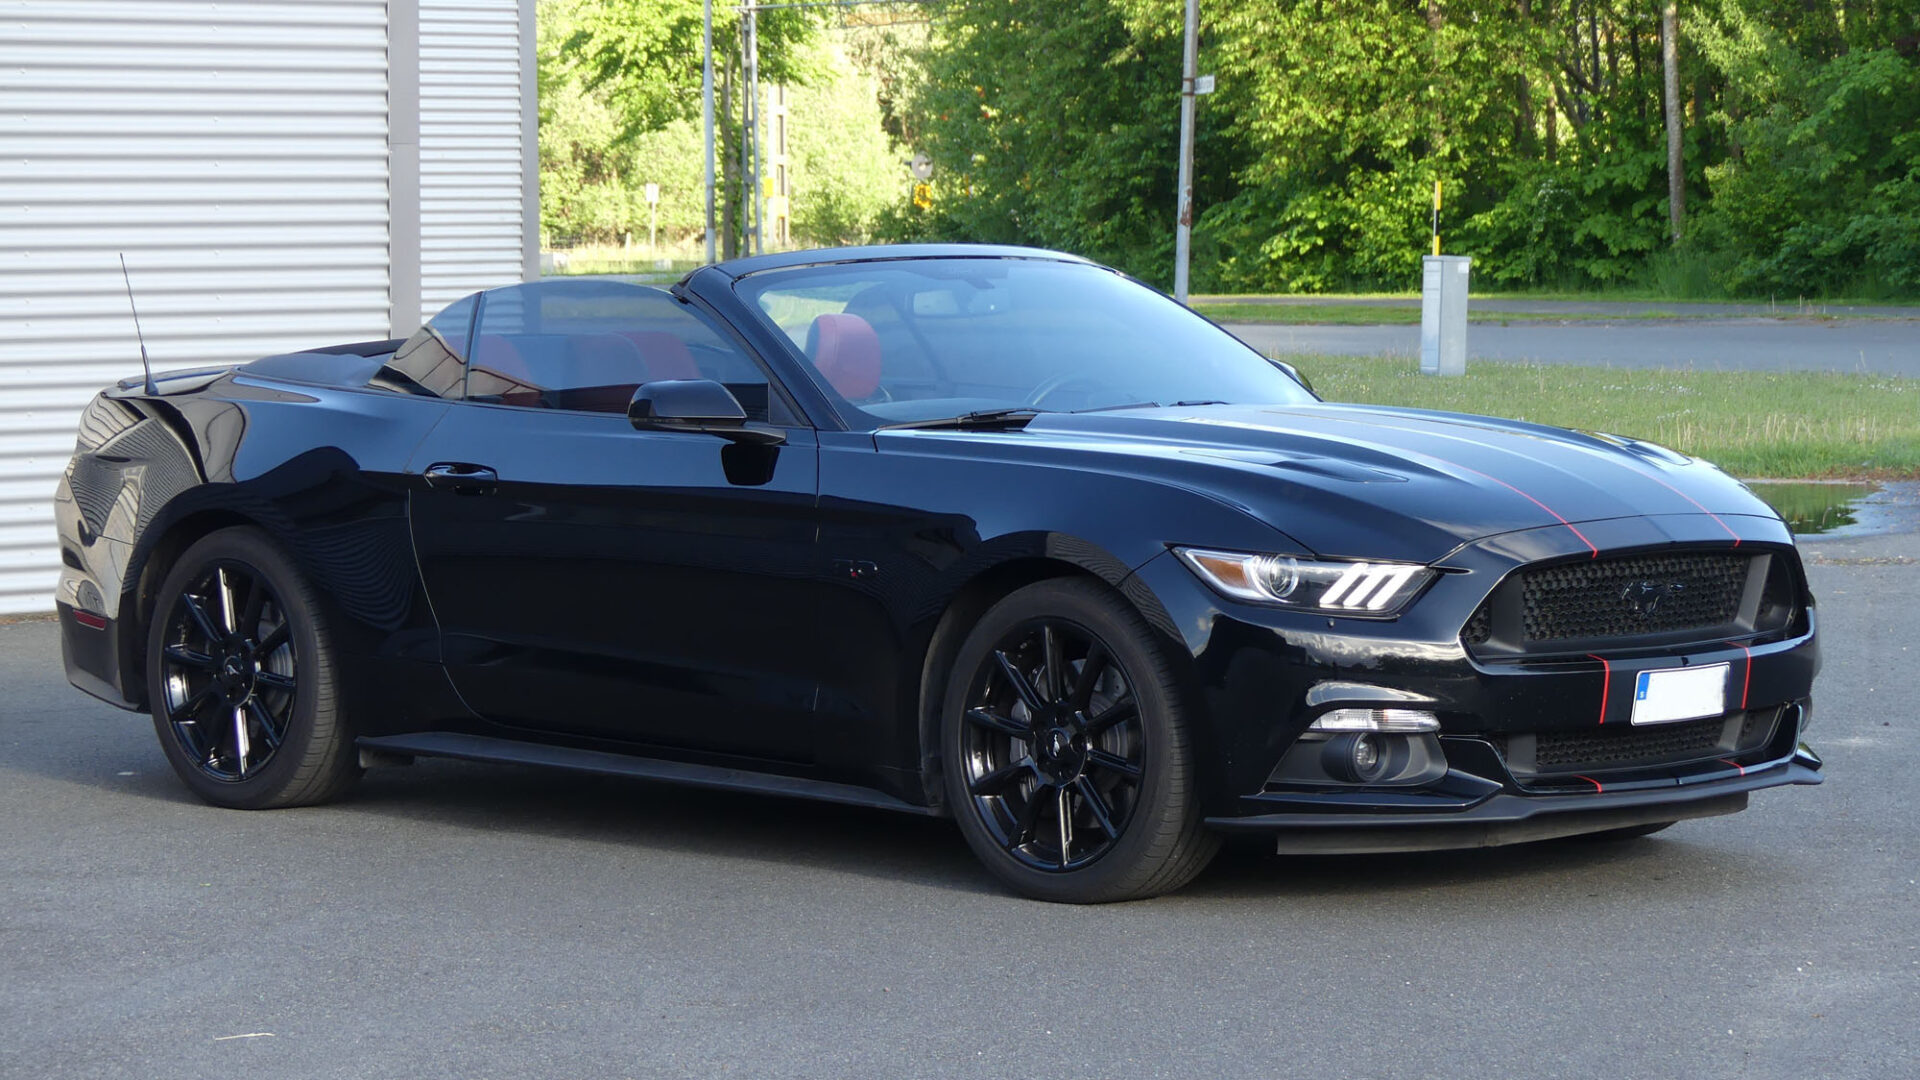 Ford Mustang mest sålda sportbilen i Sverige 2016